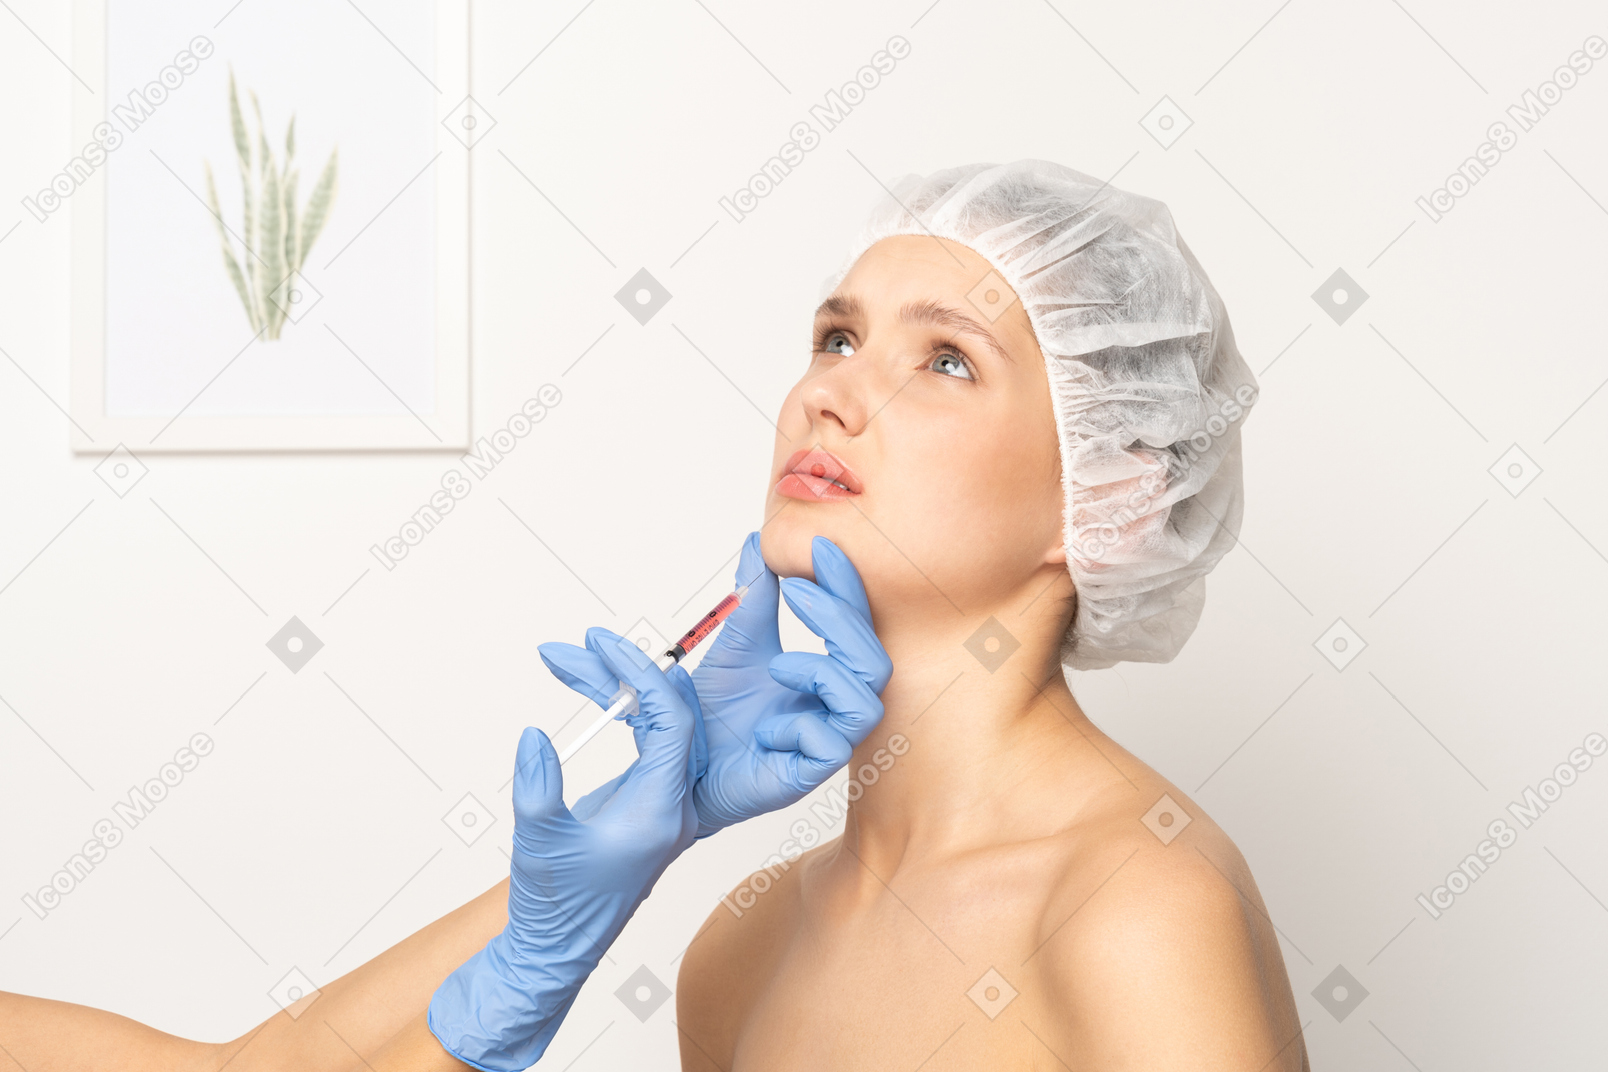 Frau, die nervös aussieht, während sie eine botox-injektion bekommt